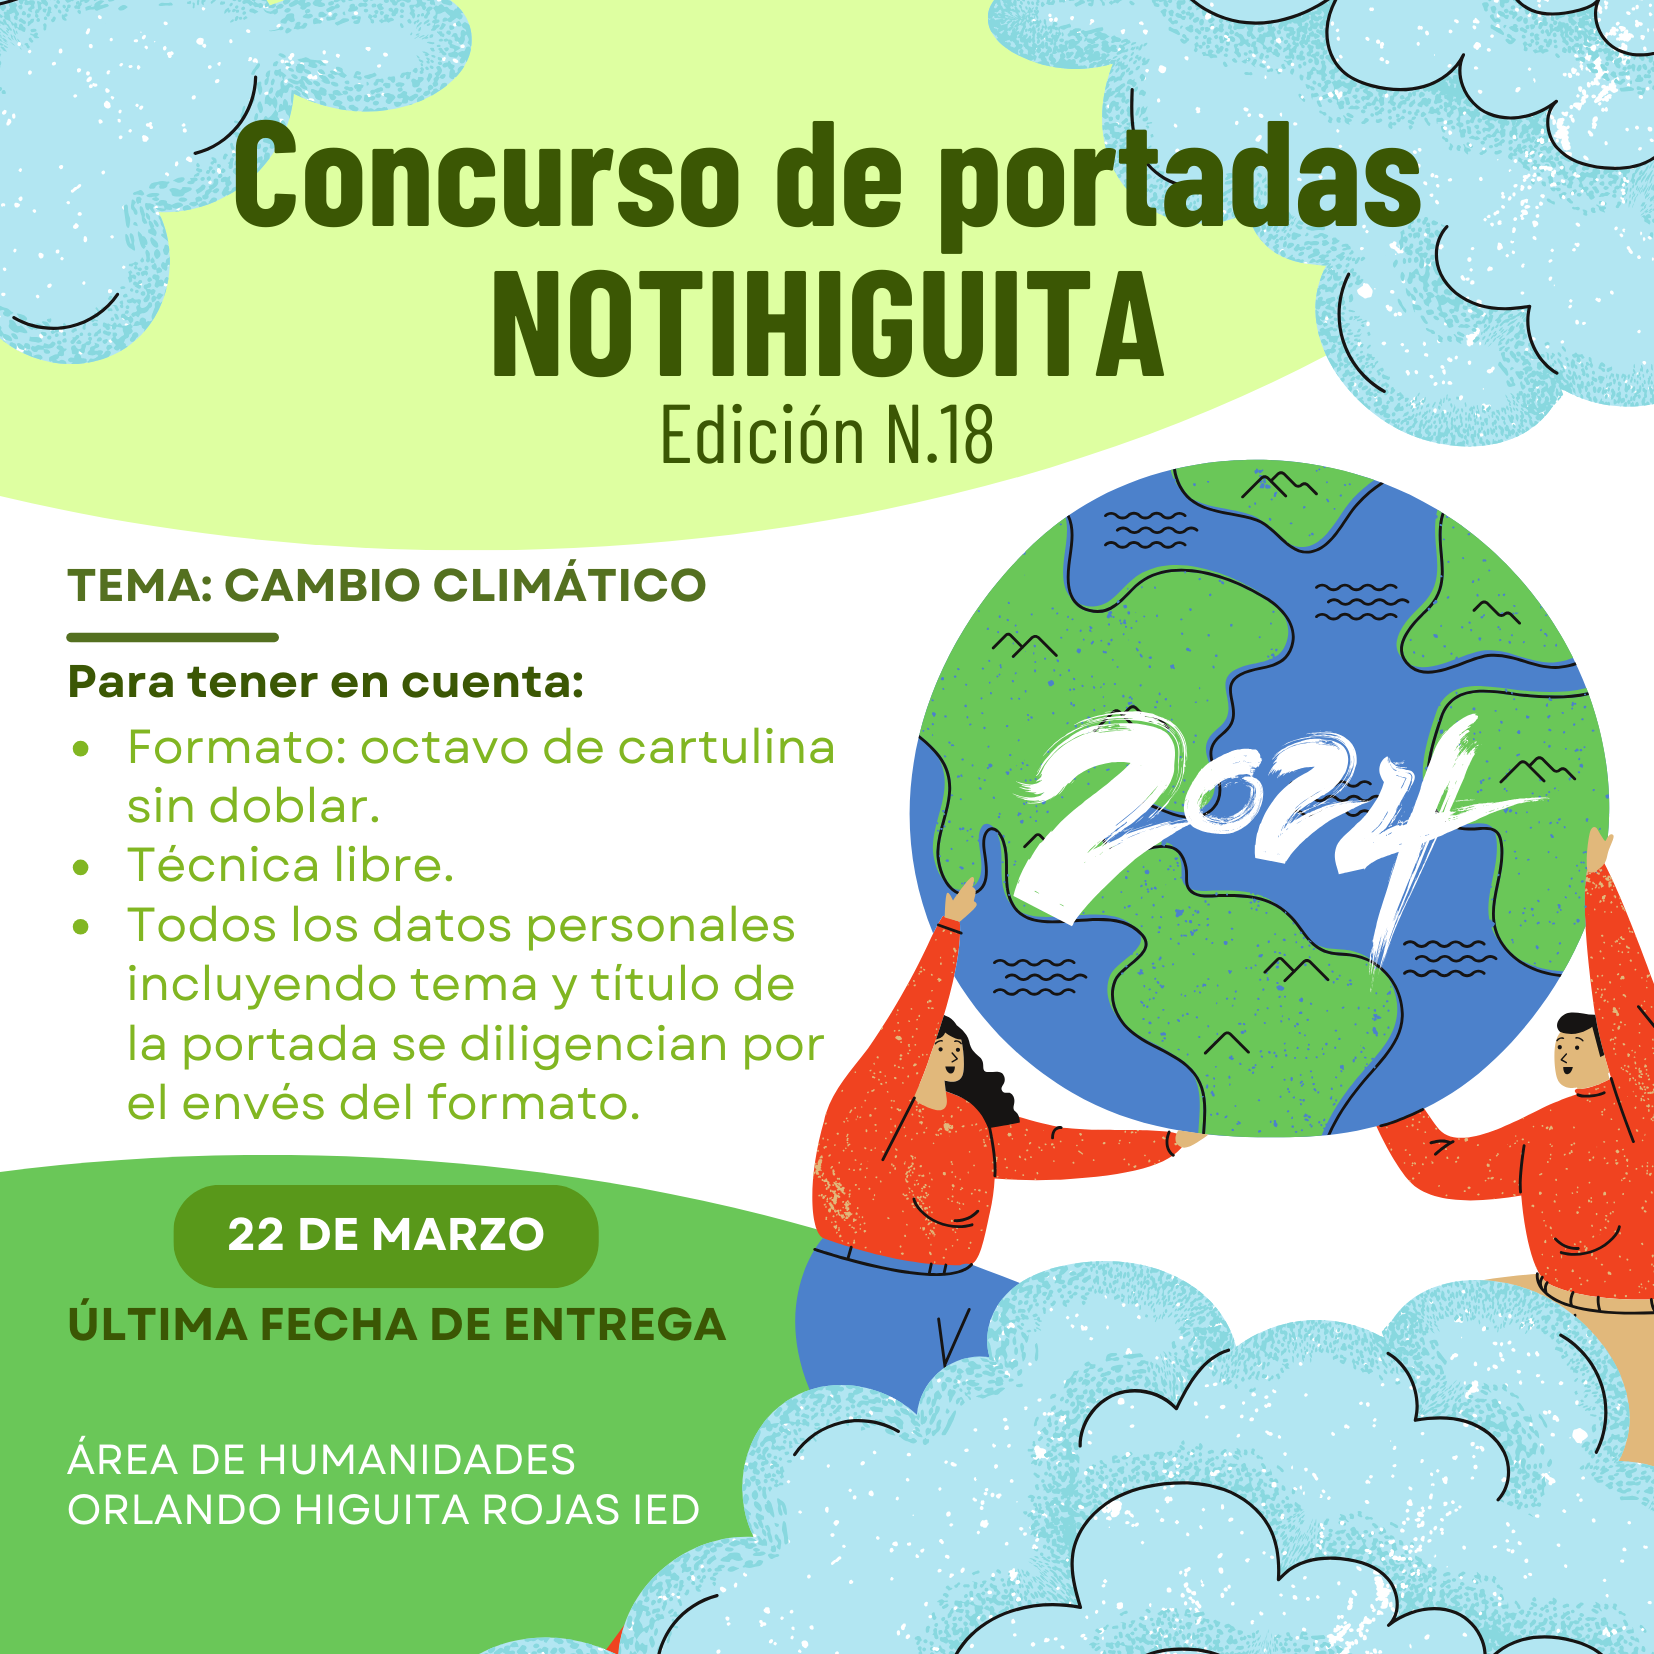 Concurso Para La Portada y Presentación de Artículos "Noti-Higuita" Edición 18